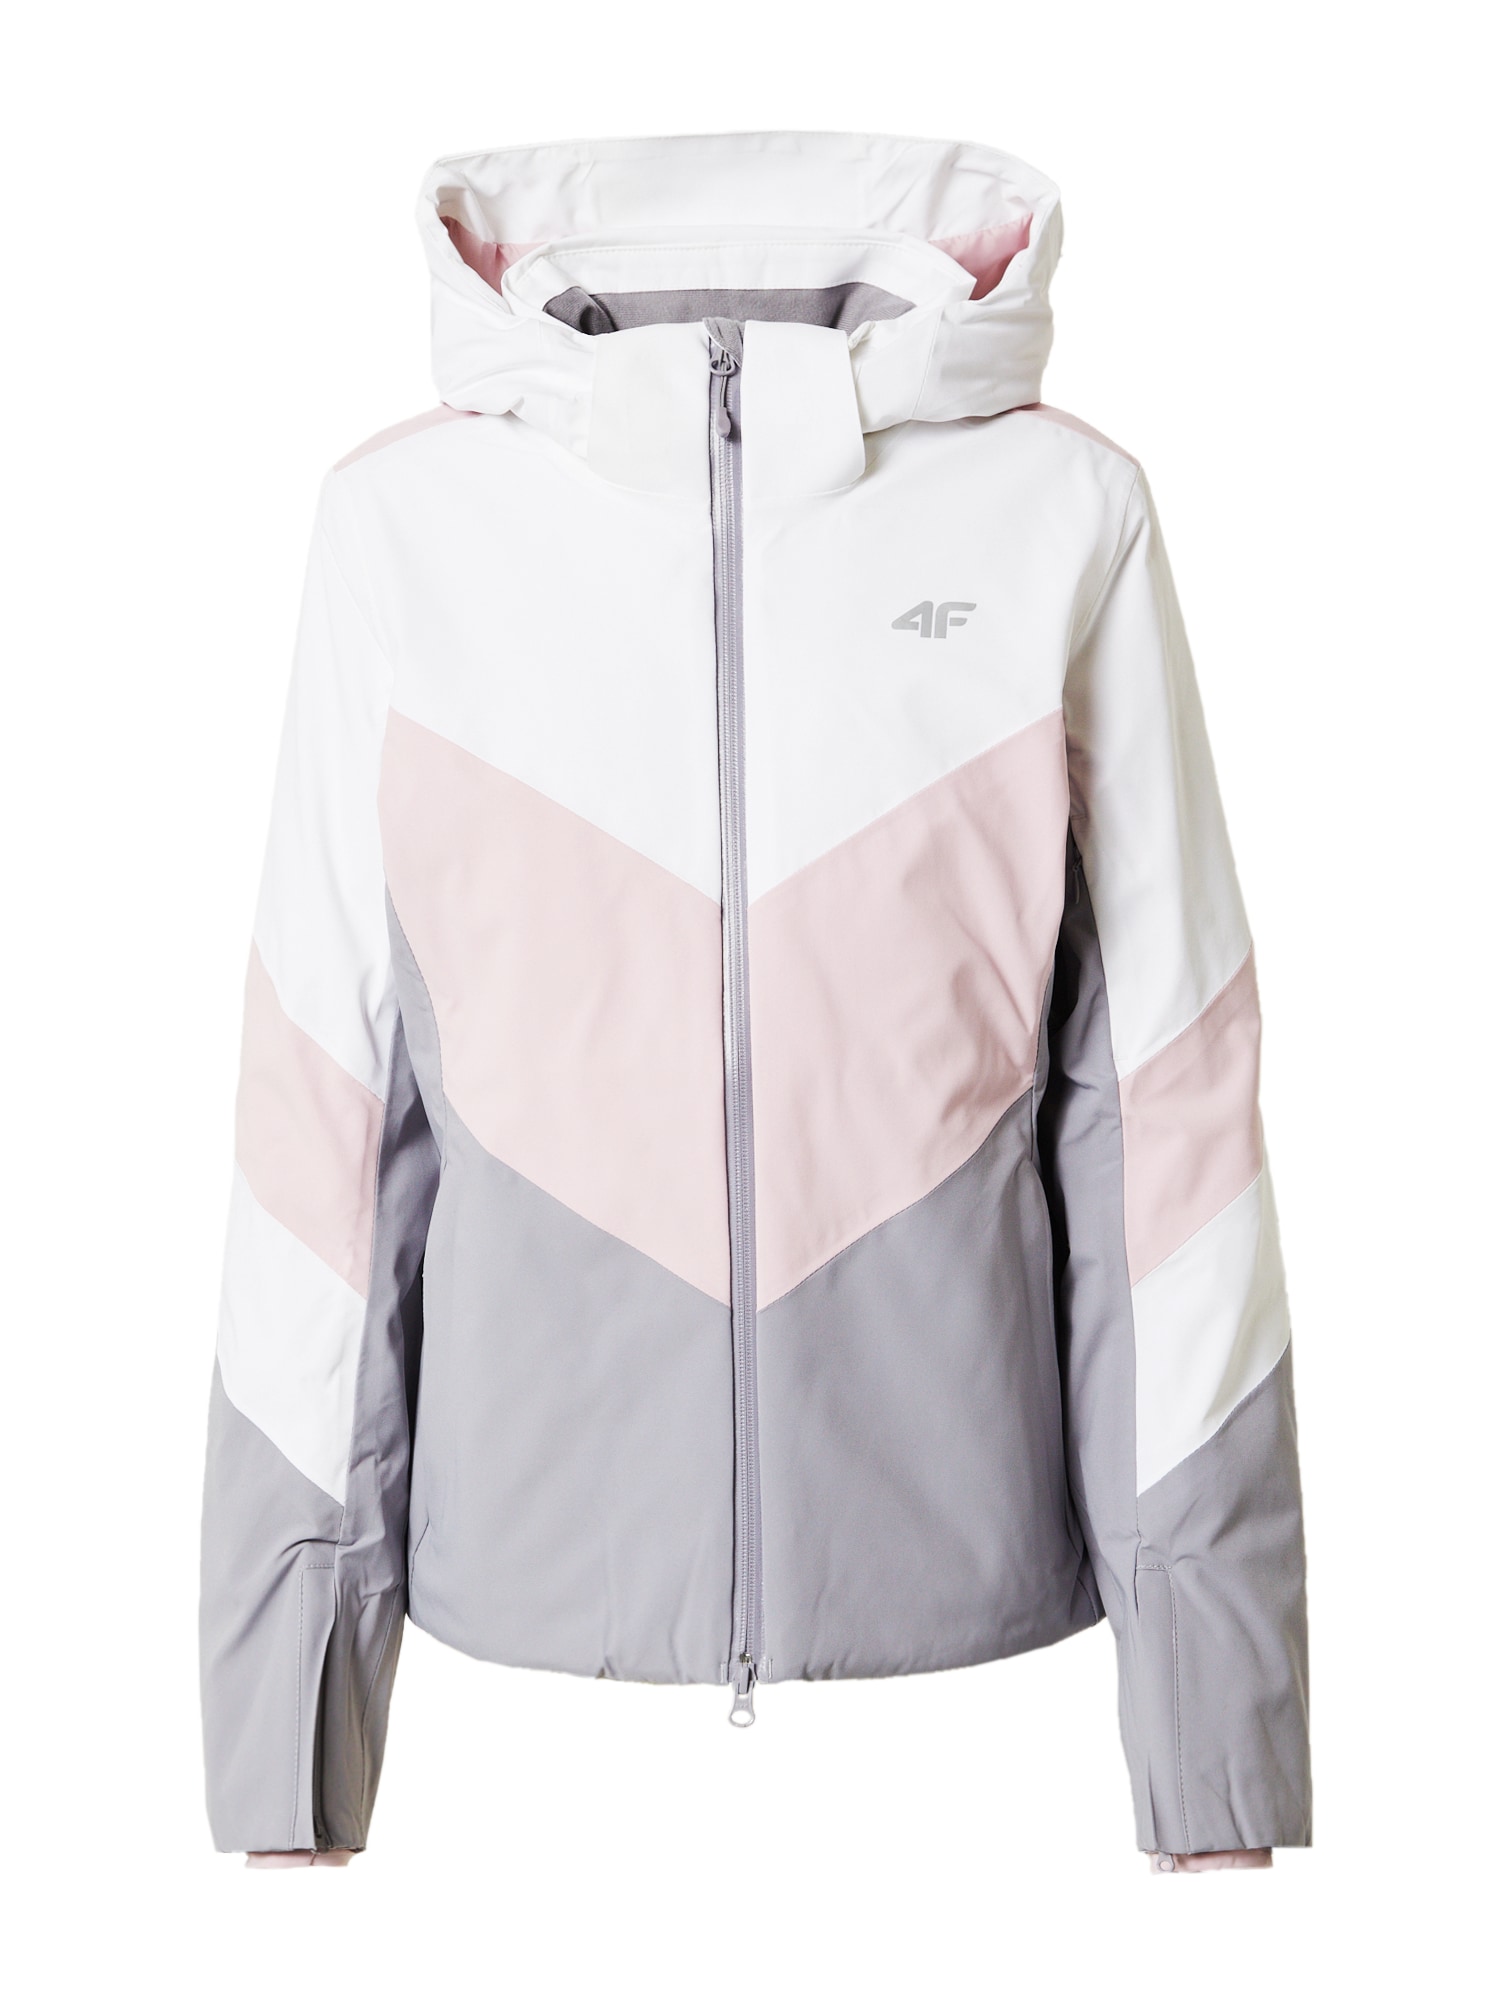 Outdoorová bunda sivá ružová biela 4F